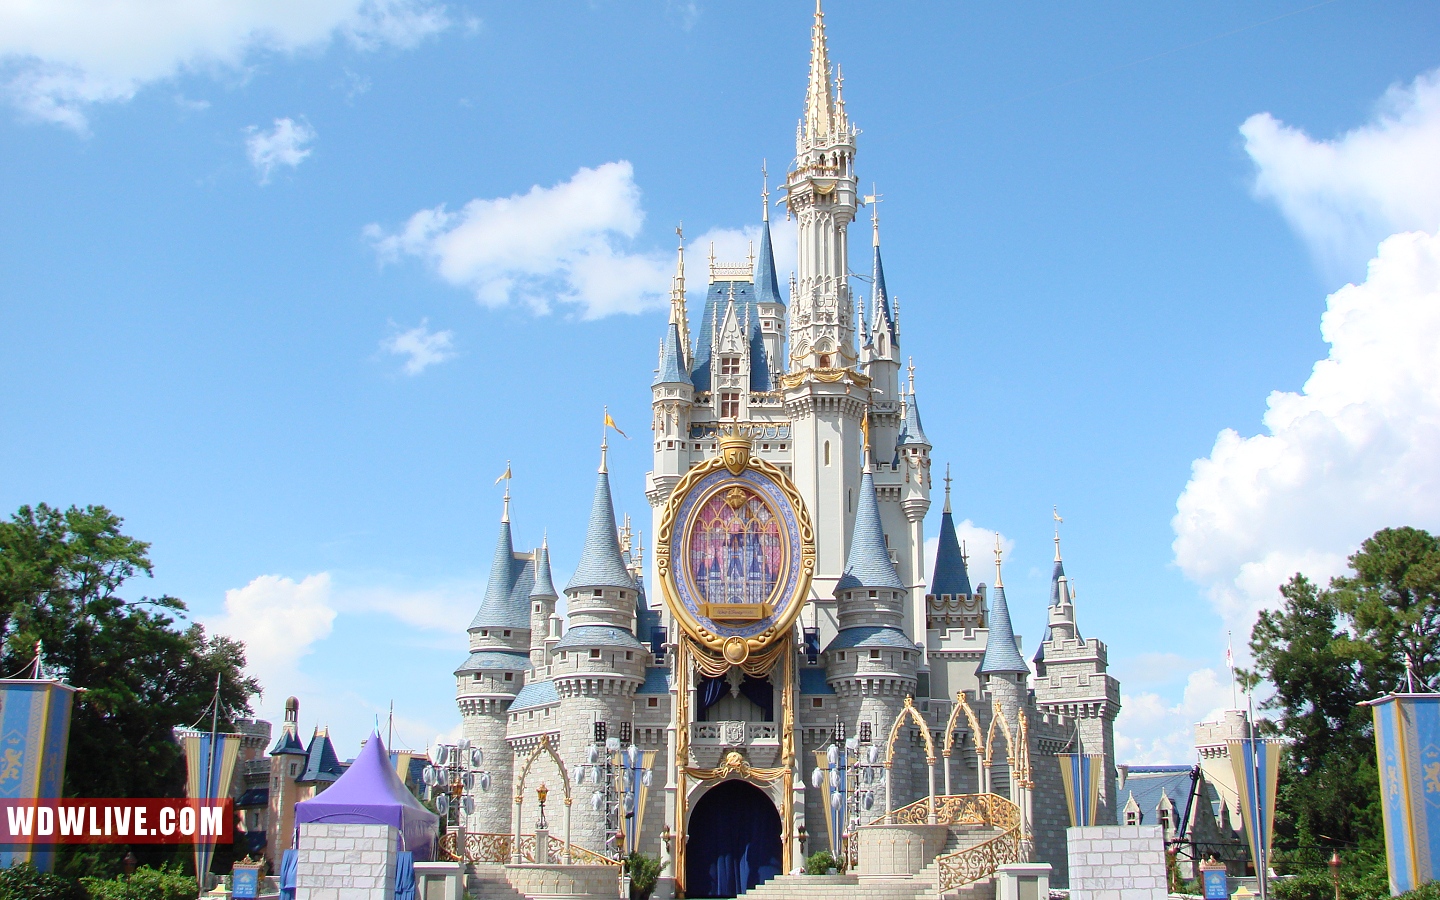 Cinderella Castle: